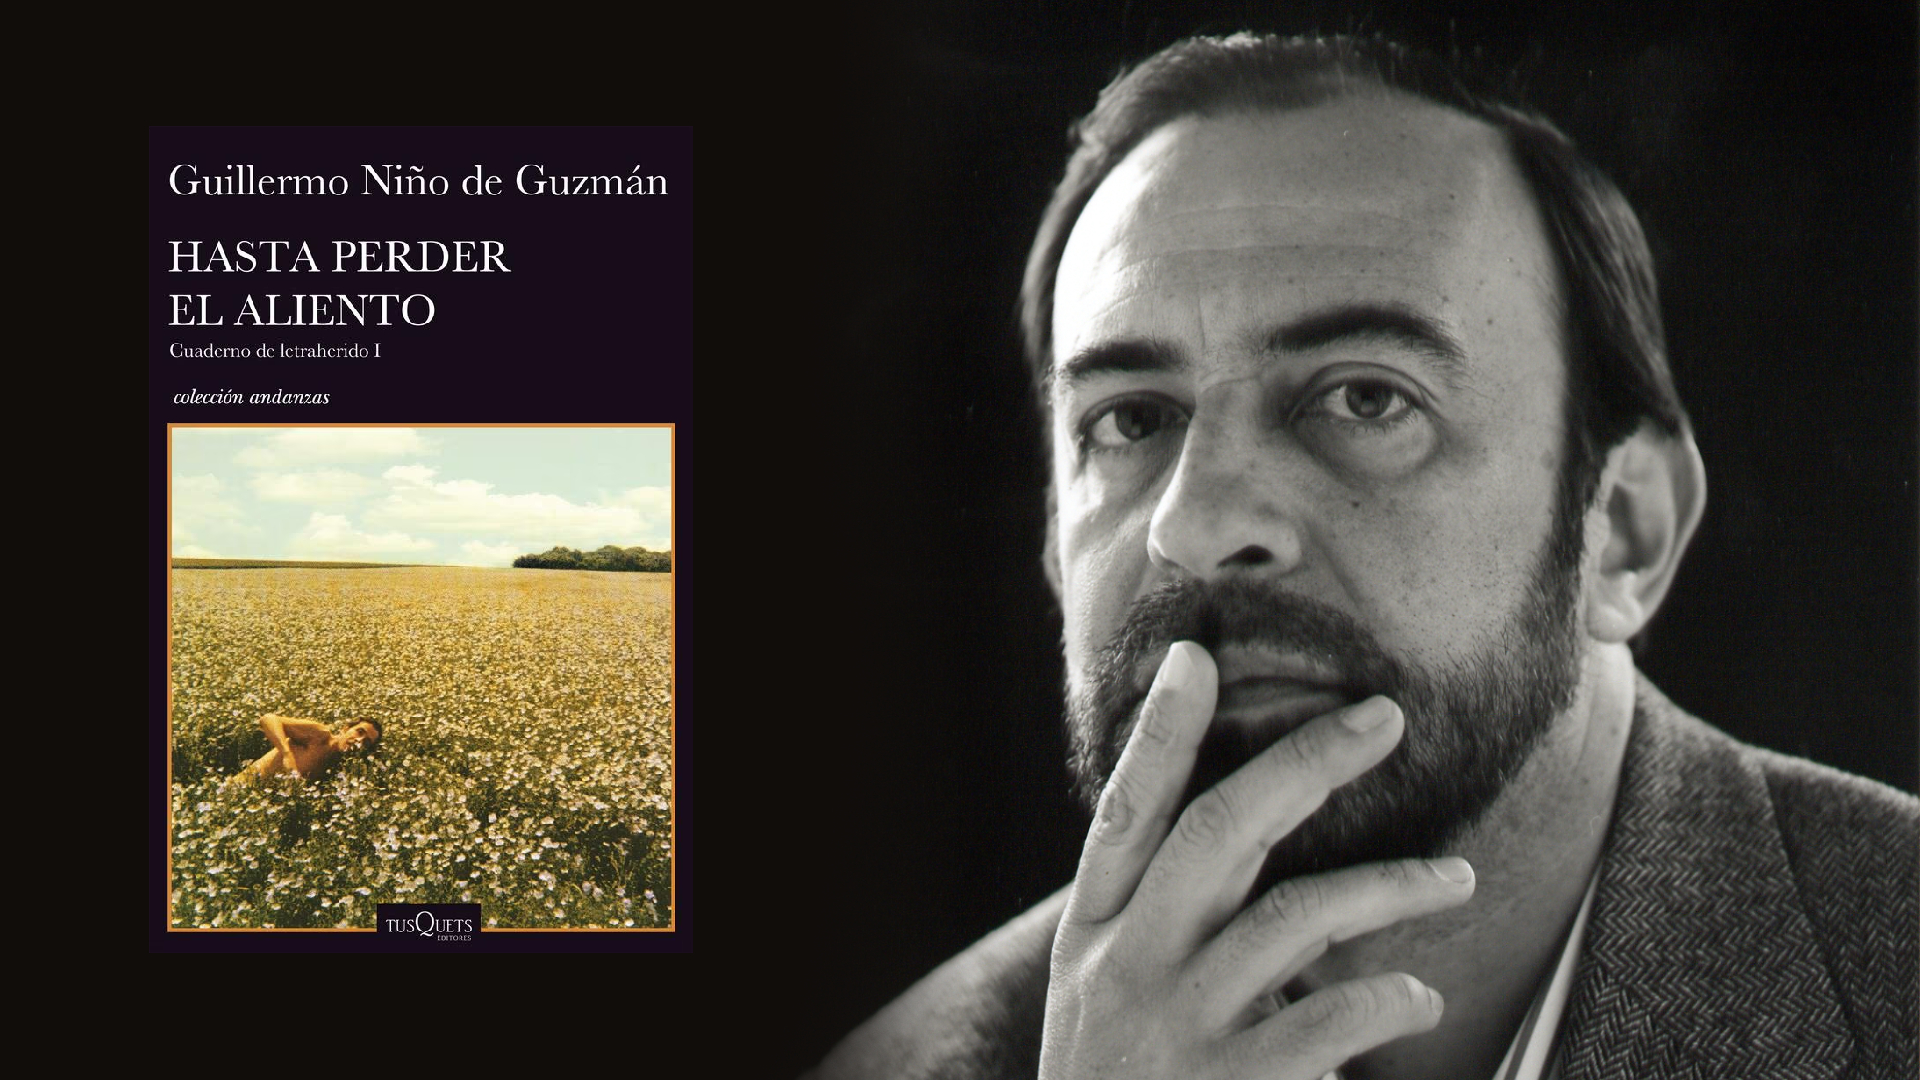 El peruano Guillermo Niño de Guzmán convirtió las anotaciones de sus lecturas en una selección de reflexiones: “Hasta perder el aliento”